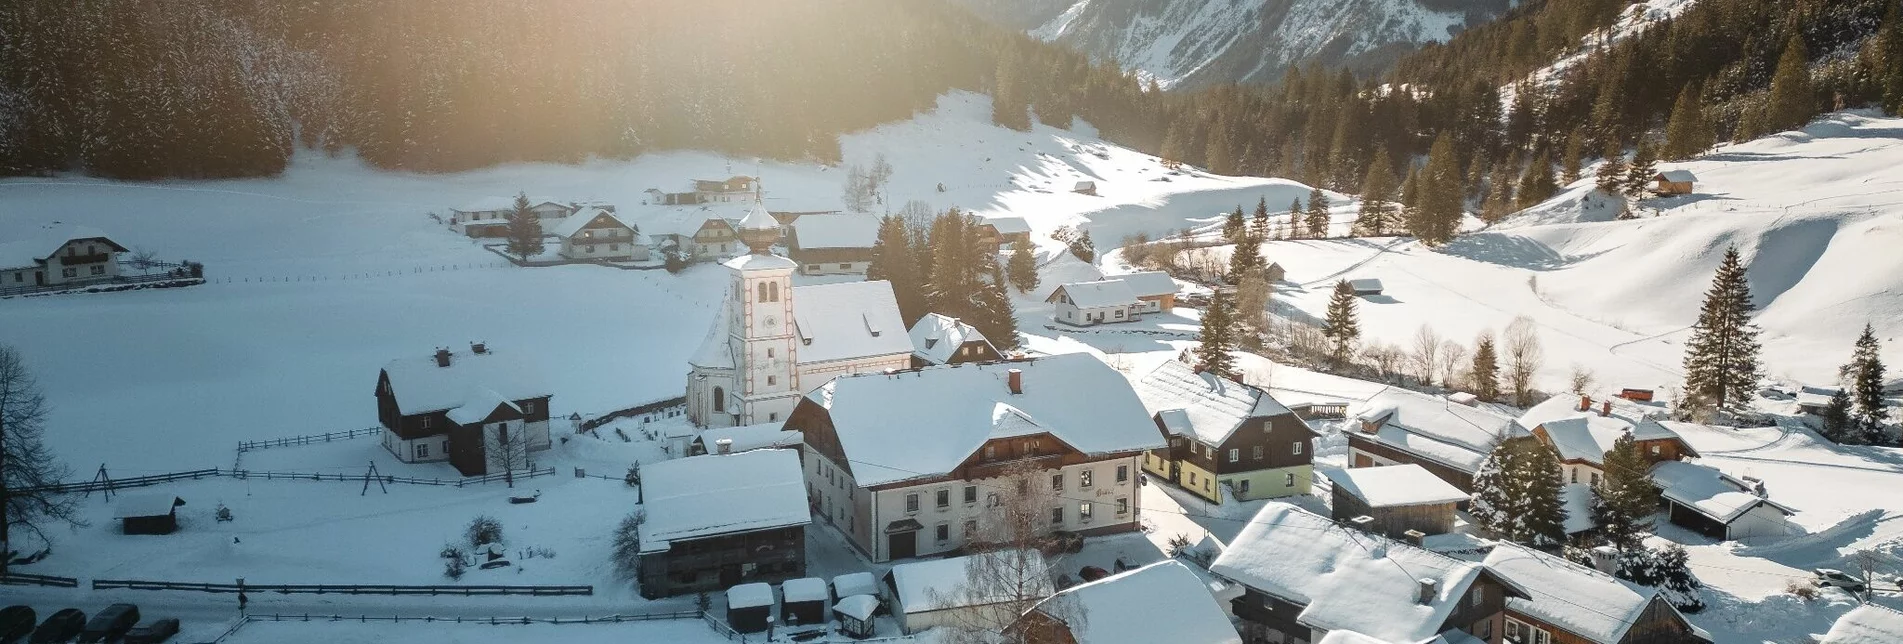 Winterwandern Wanderung zur Hansenalm - Touren-Impression #1 | © Erlebnisregion Schladming-Dachstein